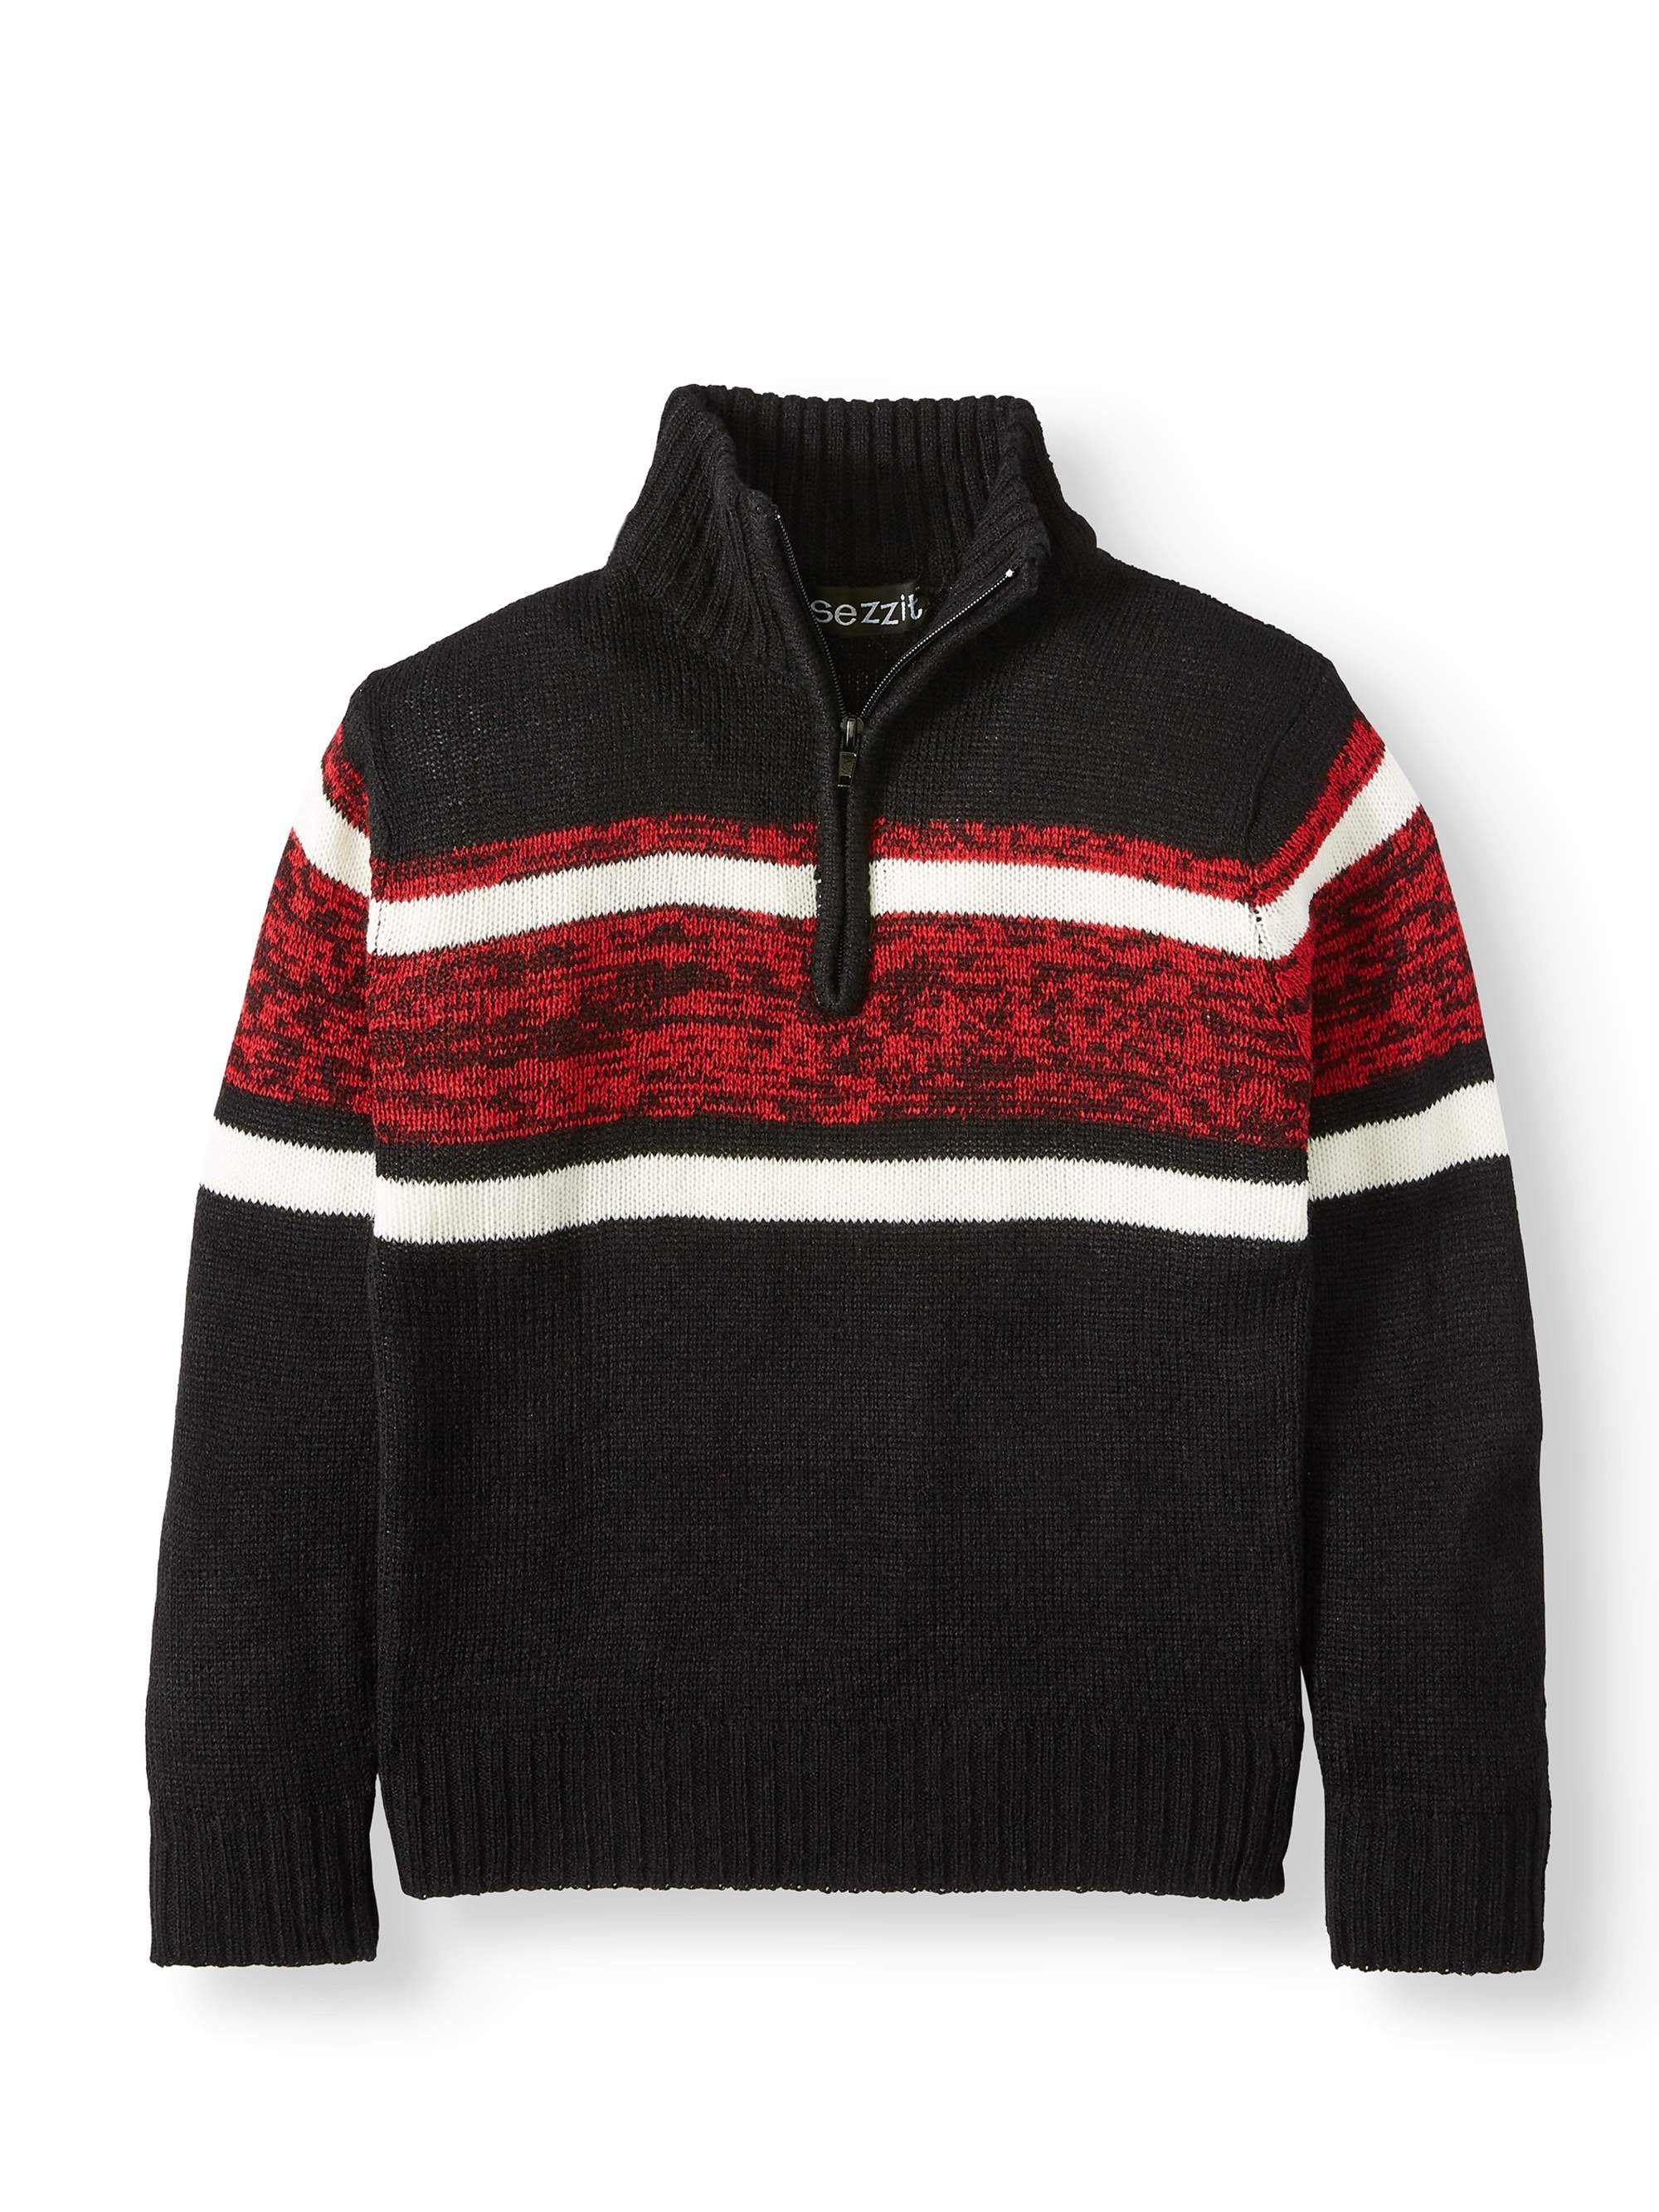 Sezzit - Sezzit Boys Wide Stripe Quarter Zip Long Sleeve Sweater Sizes ...